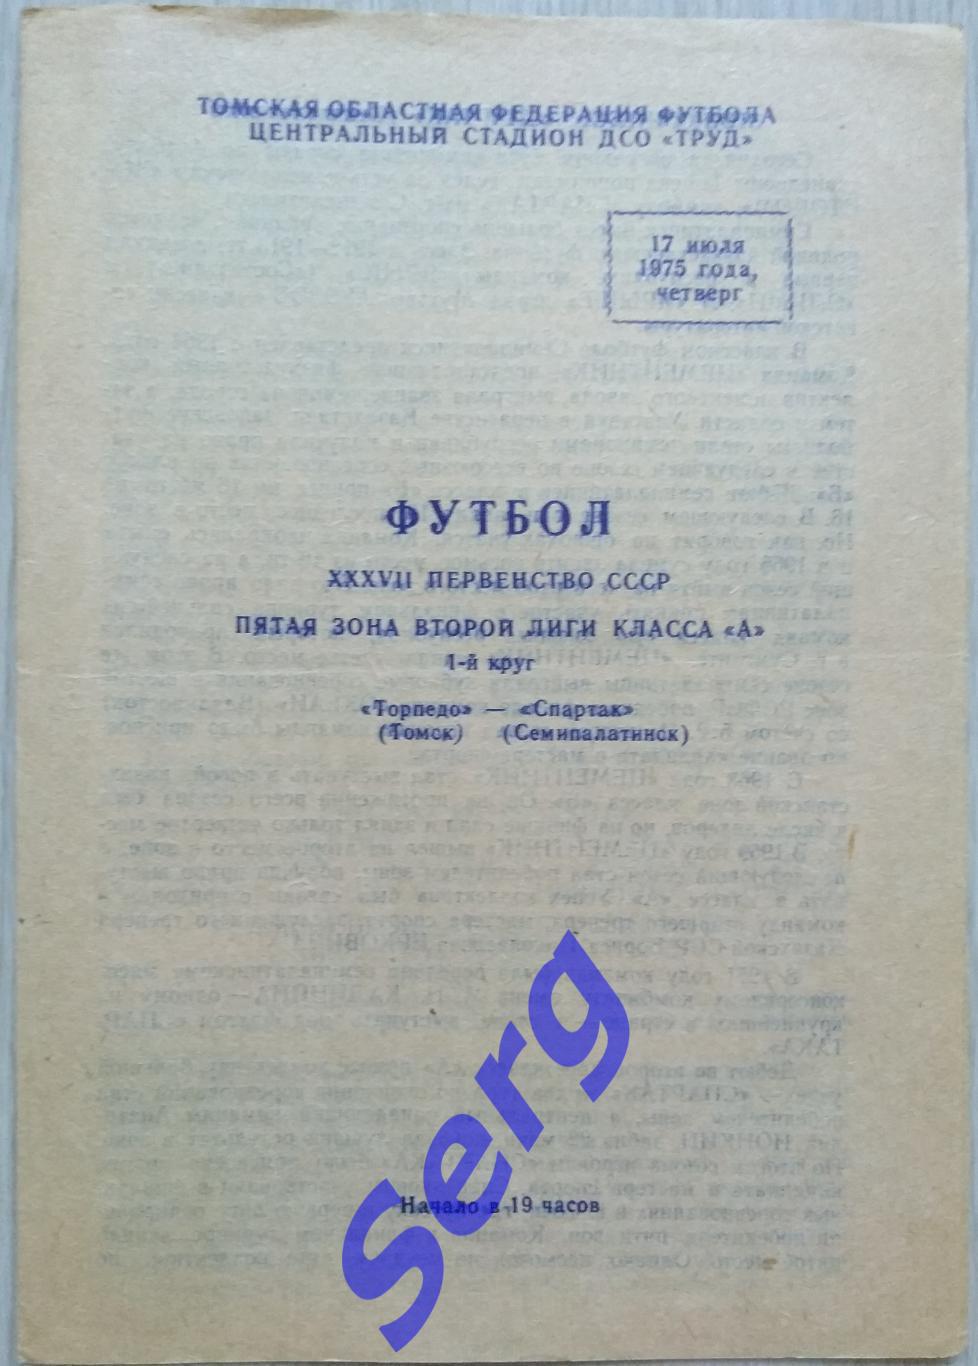 Торпедо Томск - Спартак Семипалатинск - 17 июля 1975 год